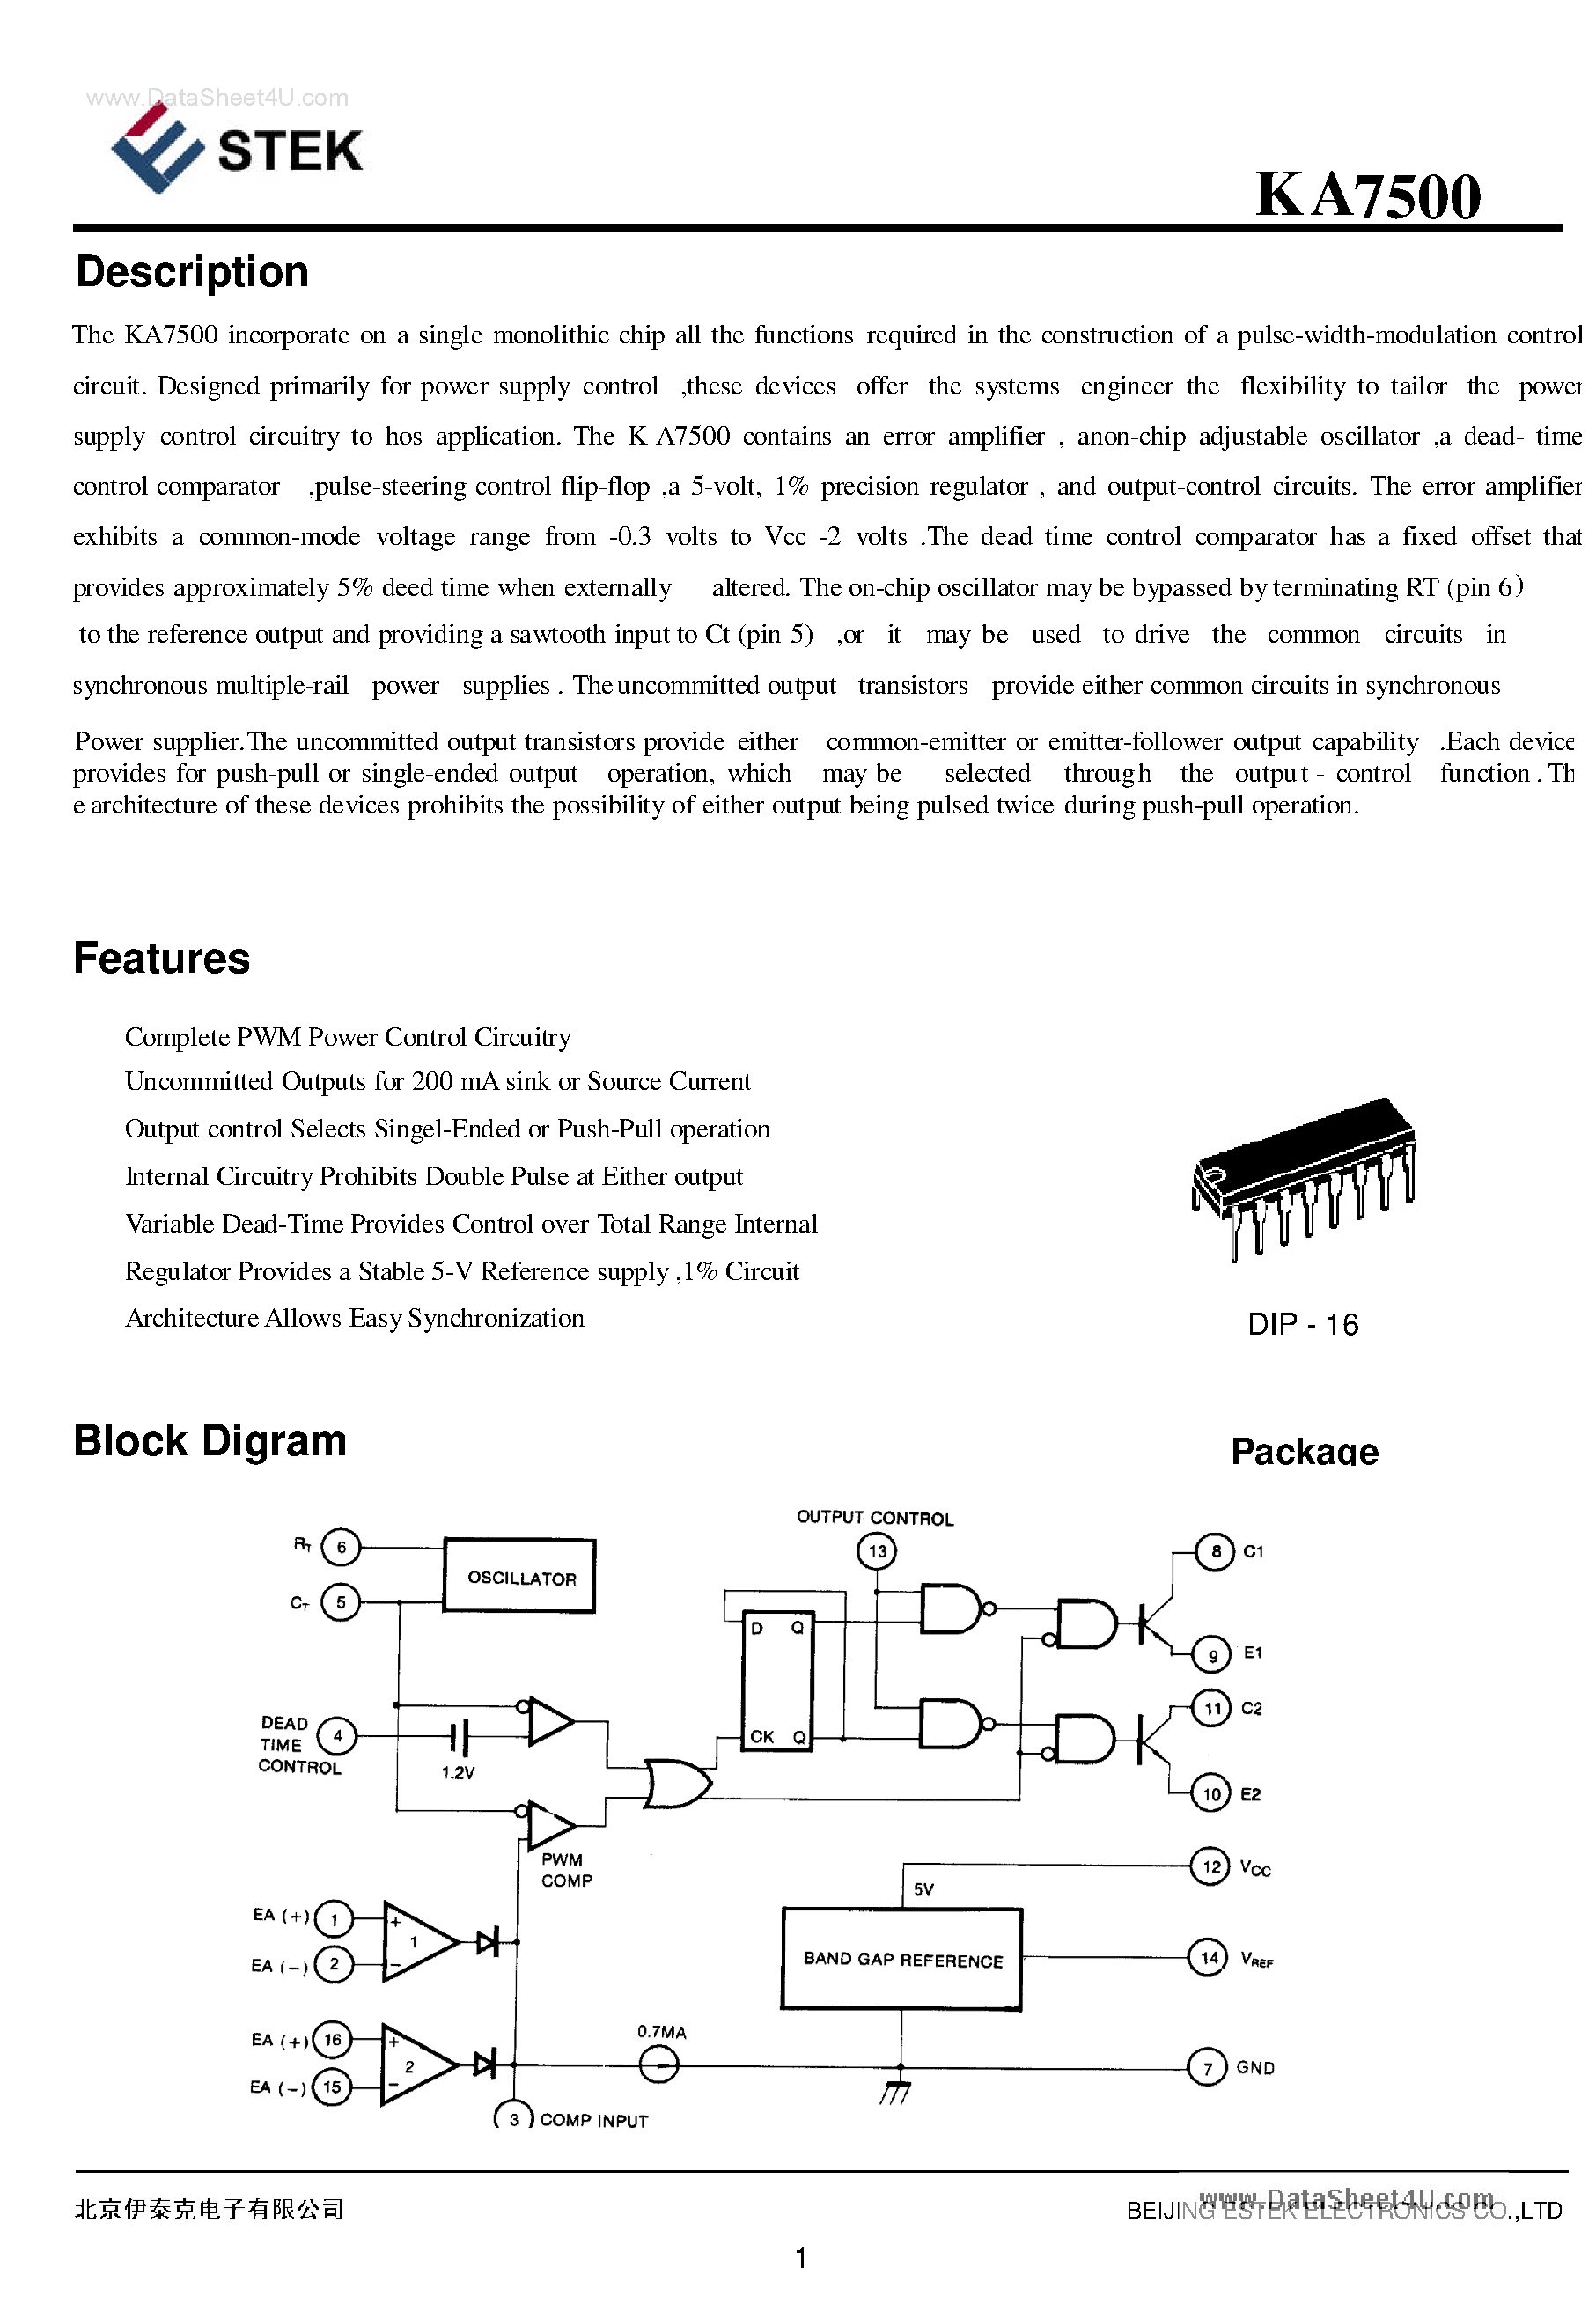 Даташит KA7500 - single monolithic chip страница 1